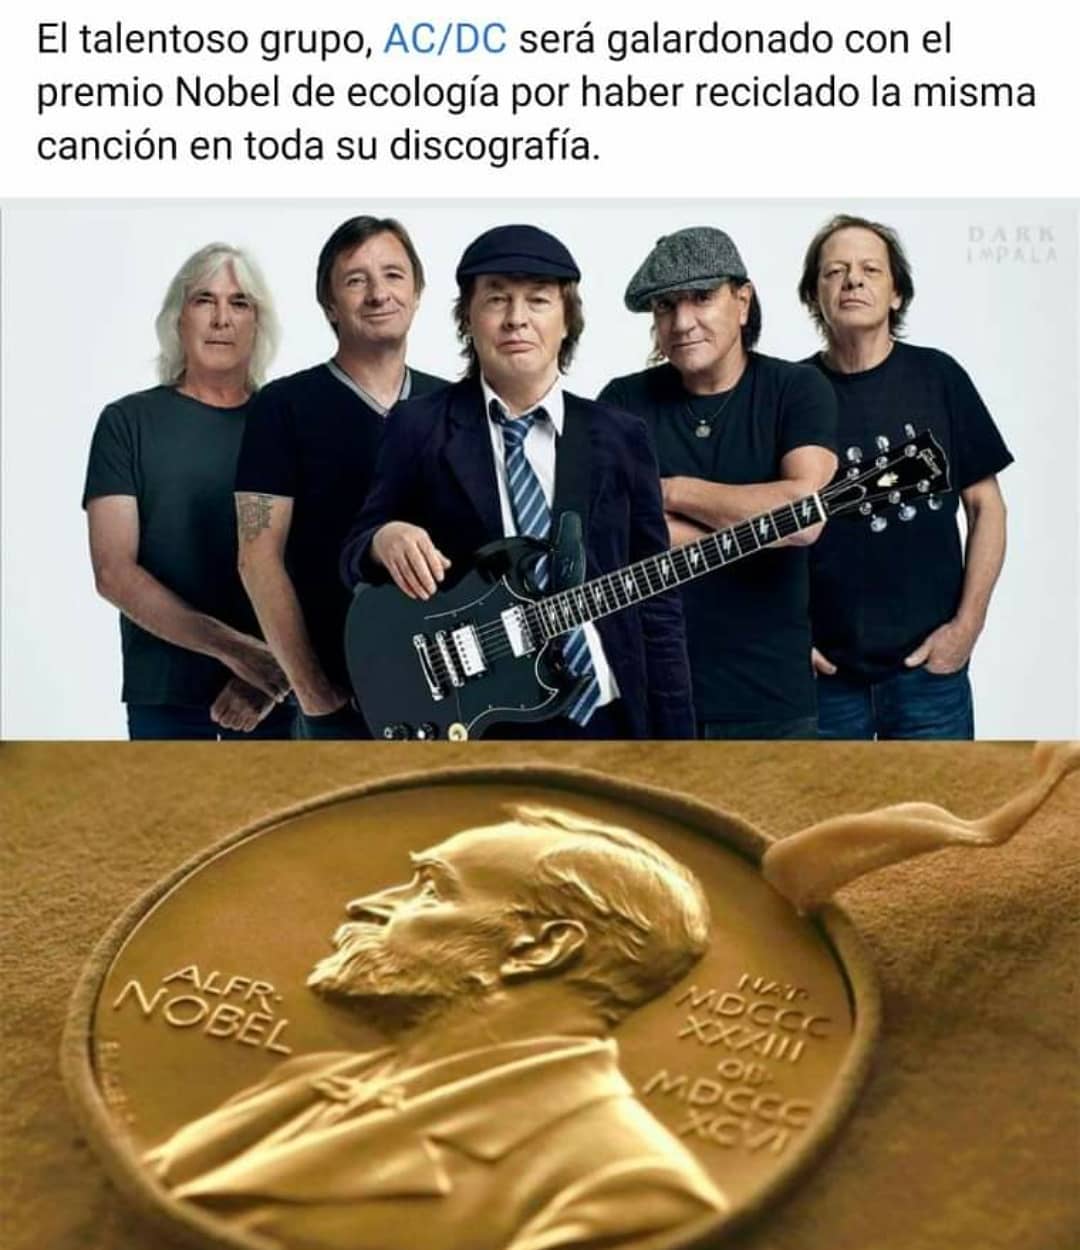 El talentoso grupo, AC/DC será galardonado con el premio Nobel de ecología por haber reciclado la misma canción en toda su discografía.